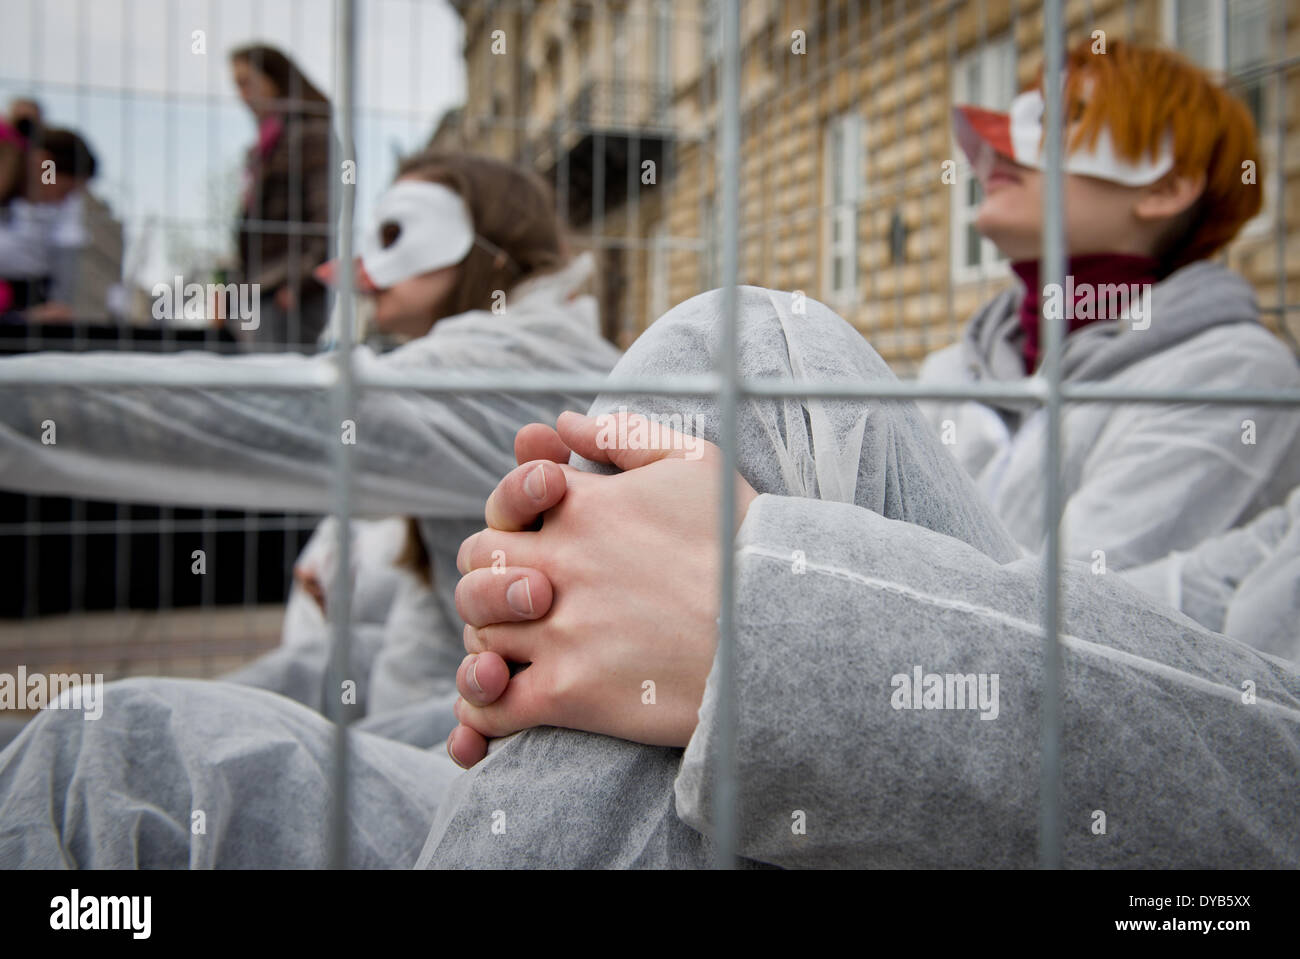 Varsovie, Pologne. 12 avr, 2014. Des militants de "cages ouvertes" organisation des manifestations contre l'élevage de volaille les cages en batterie le 12 avril à Varsovie. Quatre personnes ont été enfermés dans la cage pendant 24 heures. Banque D'Images